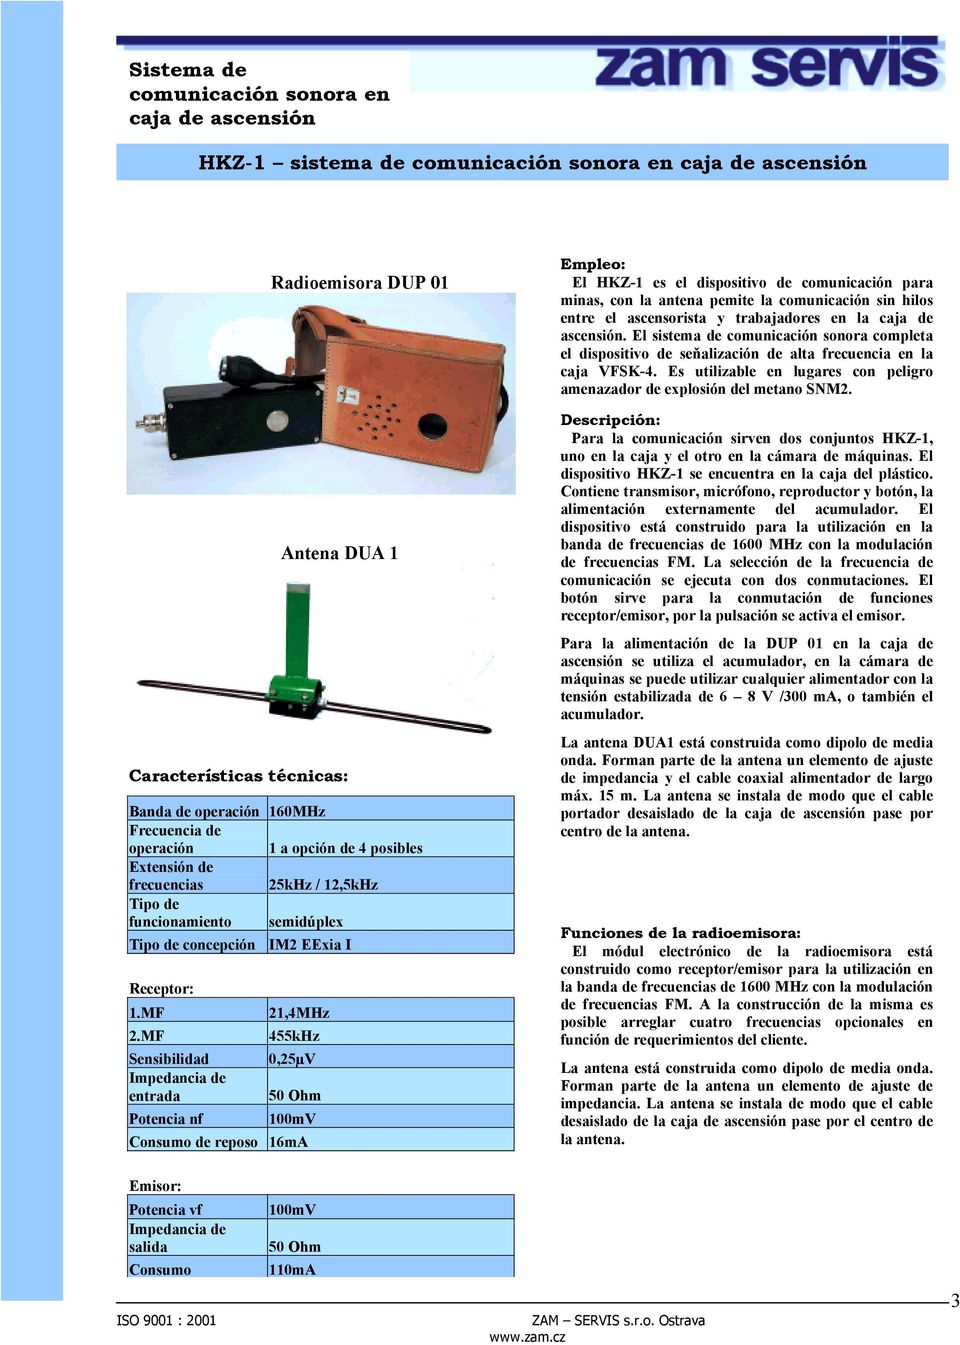 MF Sensibilidad Impedancia de entrada Potencia nf 21,4MHz 455kHz 0,25µV 50 Ohm 100mV Consumo de reposo 16mA Empleo: El HKZ-1 es el dispositivo de comunicación para minas, con la antena pemite la